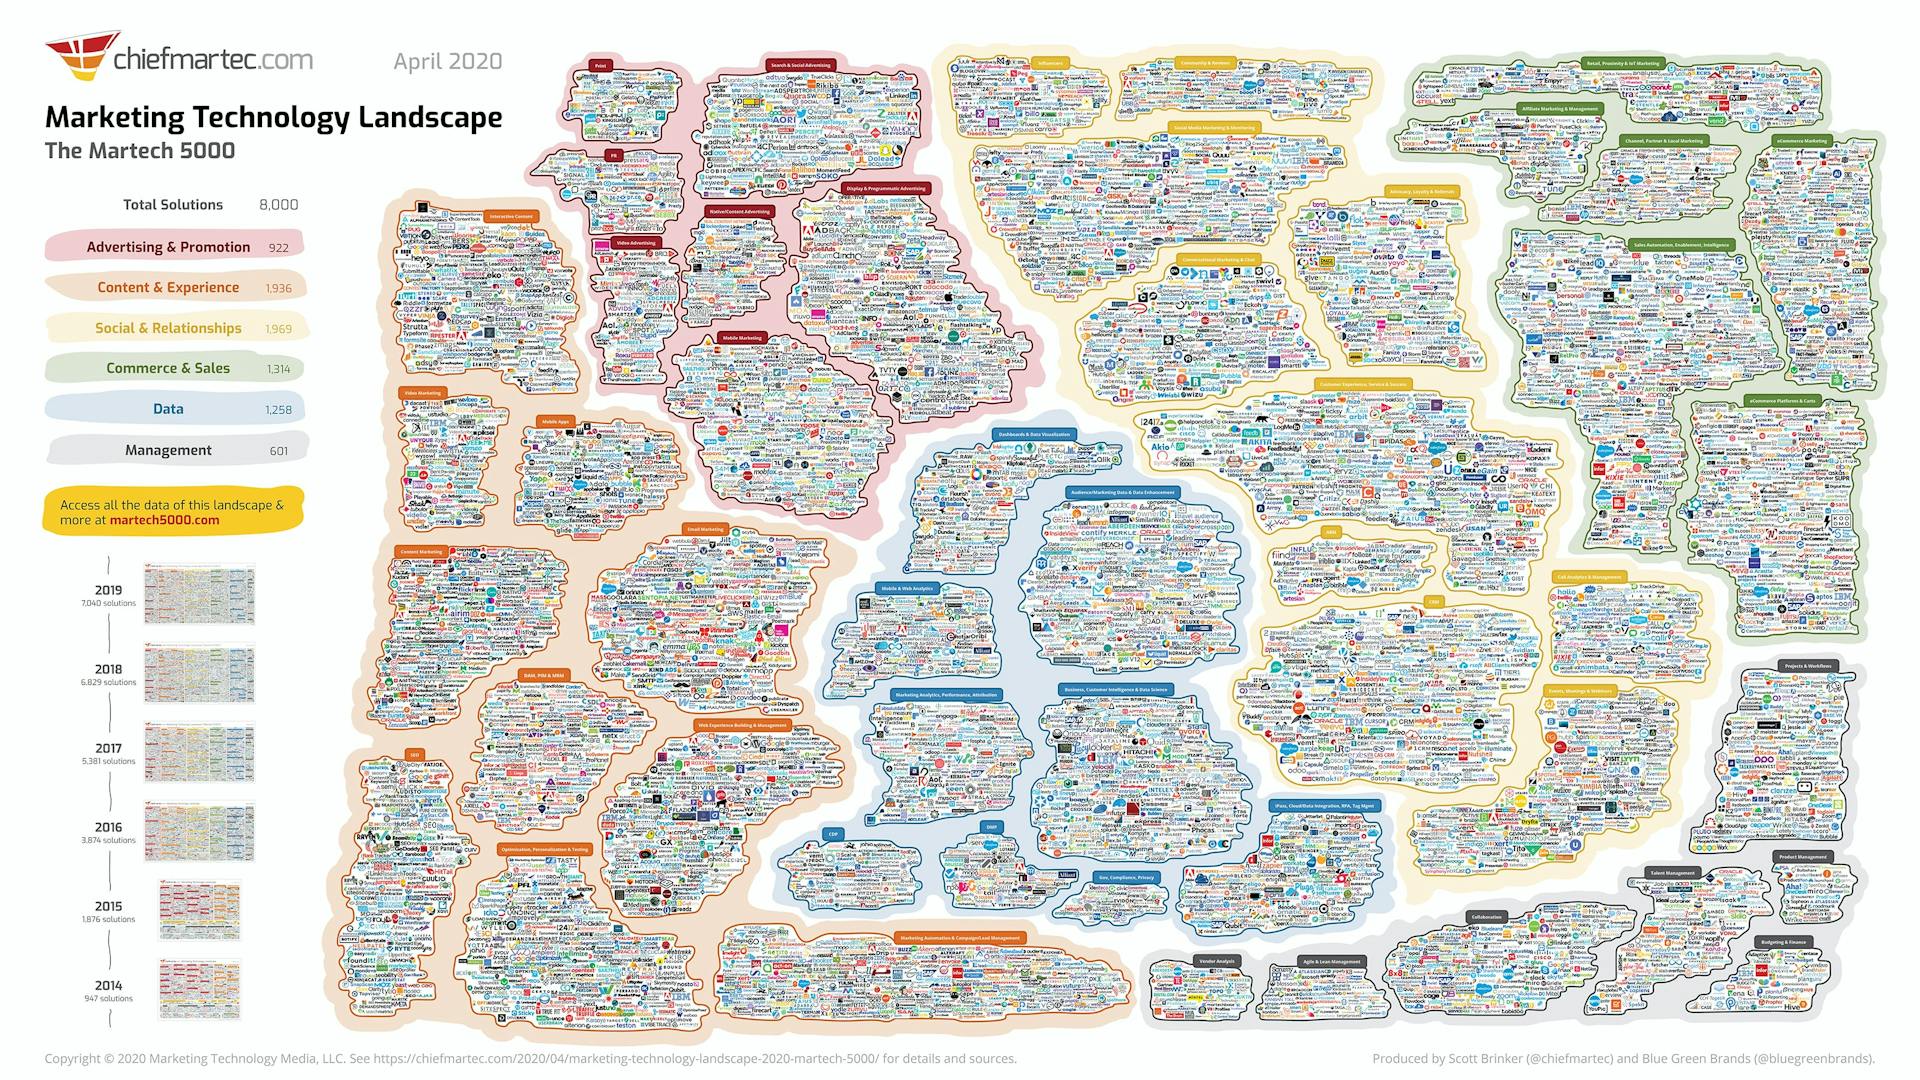 Une infographie présentant les logos des principaux fournisseurs de martech en 2020. L'infographie est divisée en différentes sections en fonction de l'utilisation de l'outil : publicité et promotion, contenu et expérience, social et relations, commerce et ventes, gestion des données.